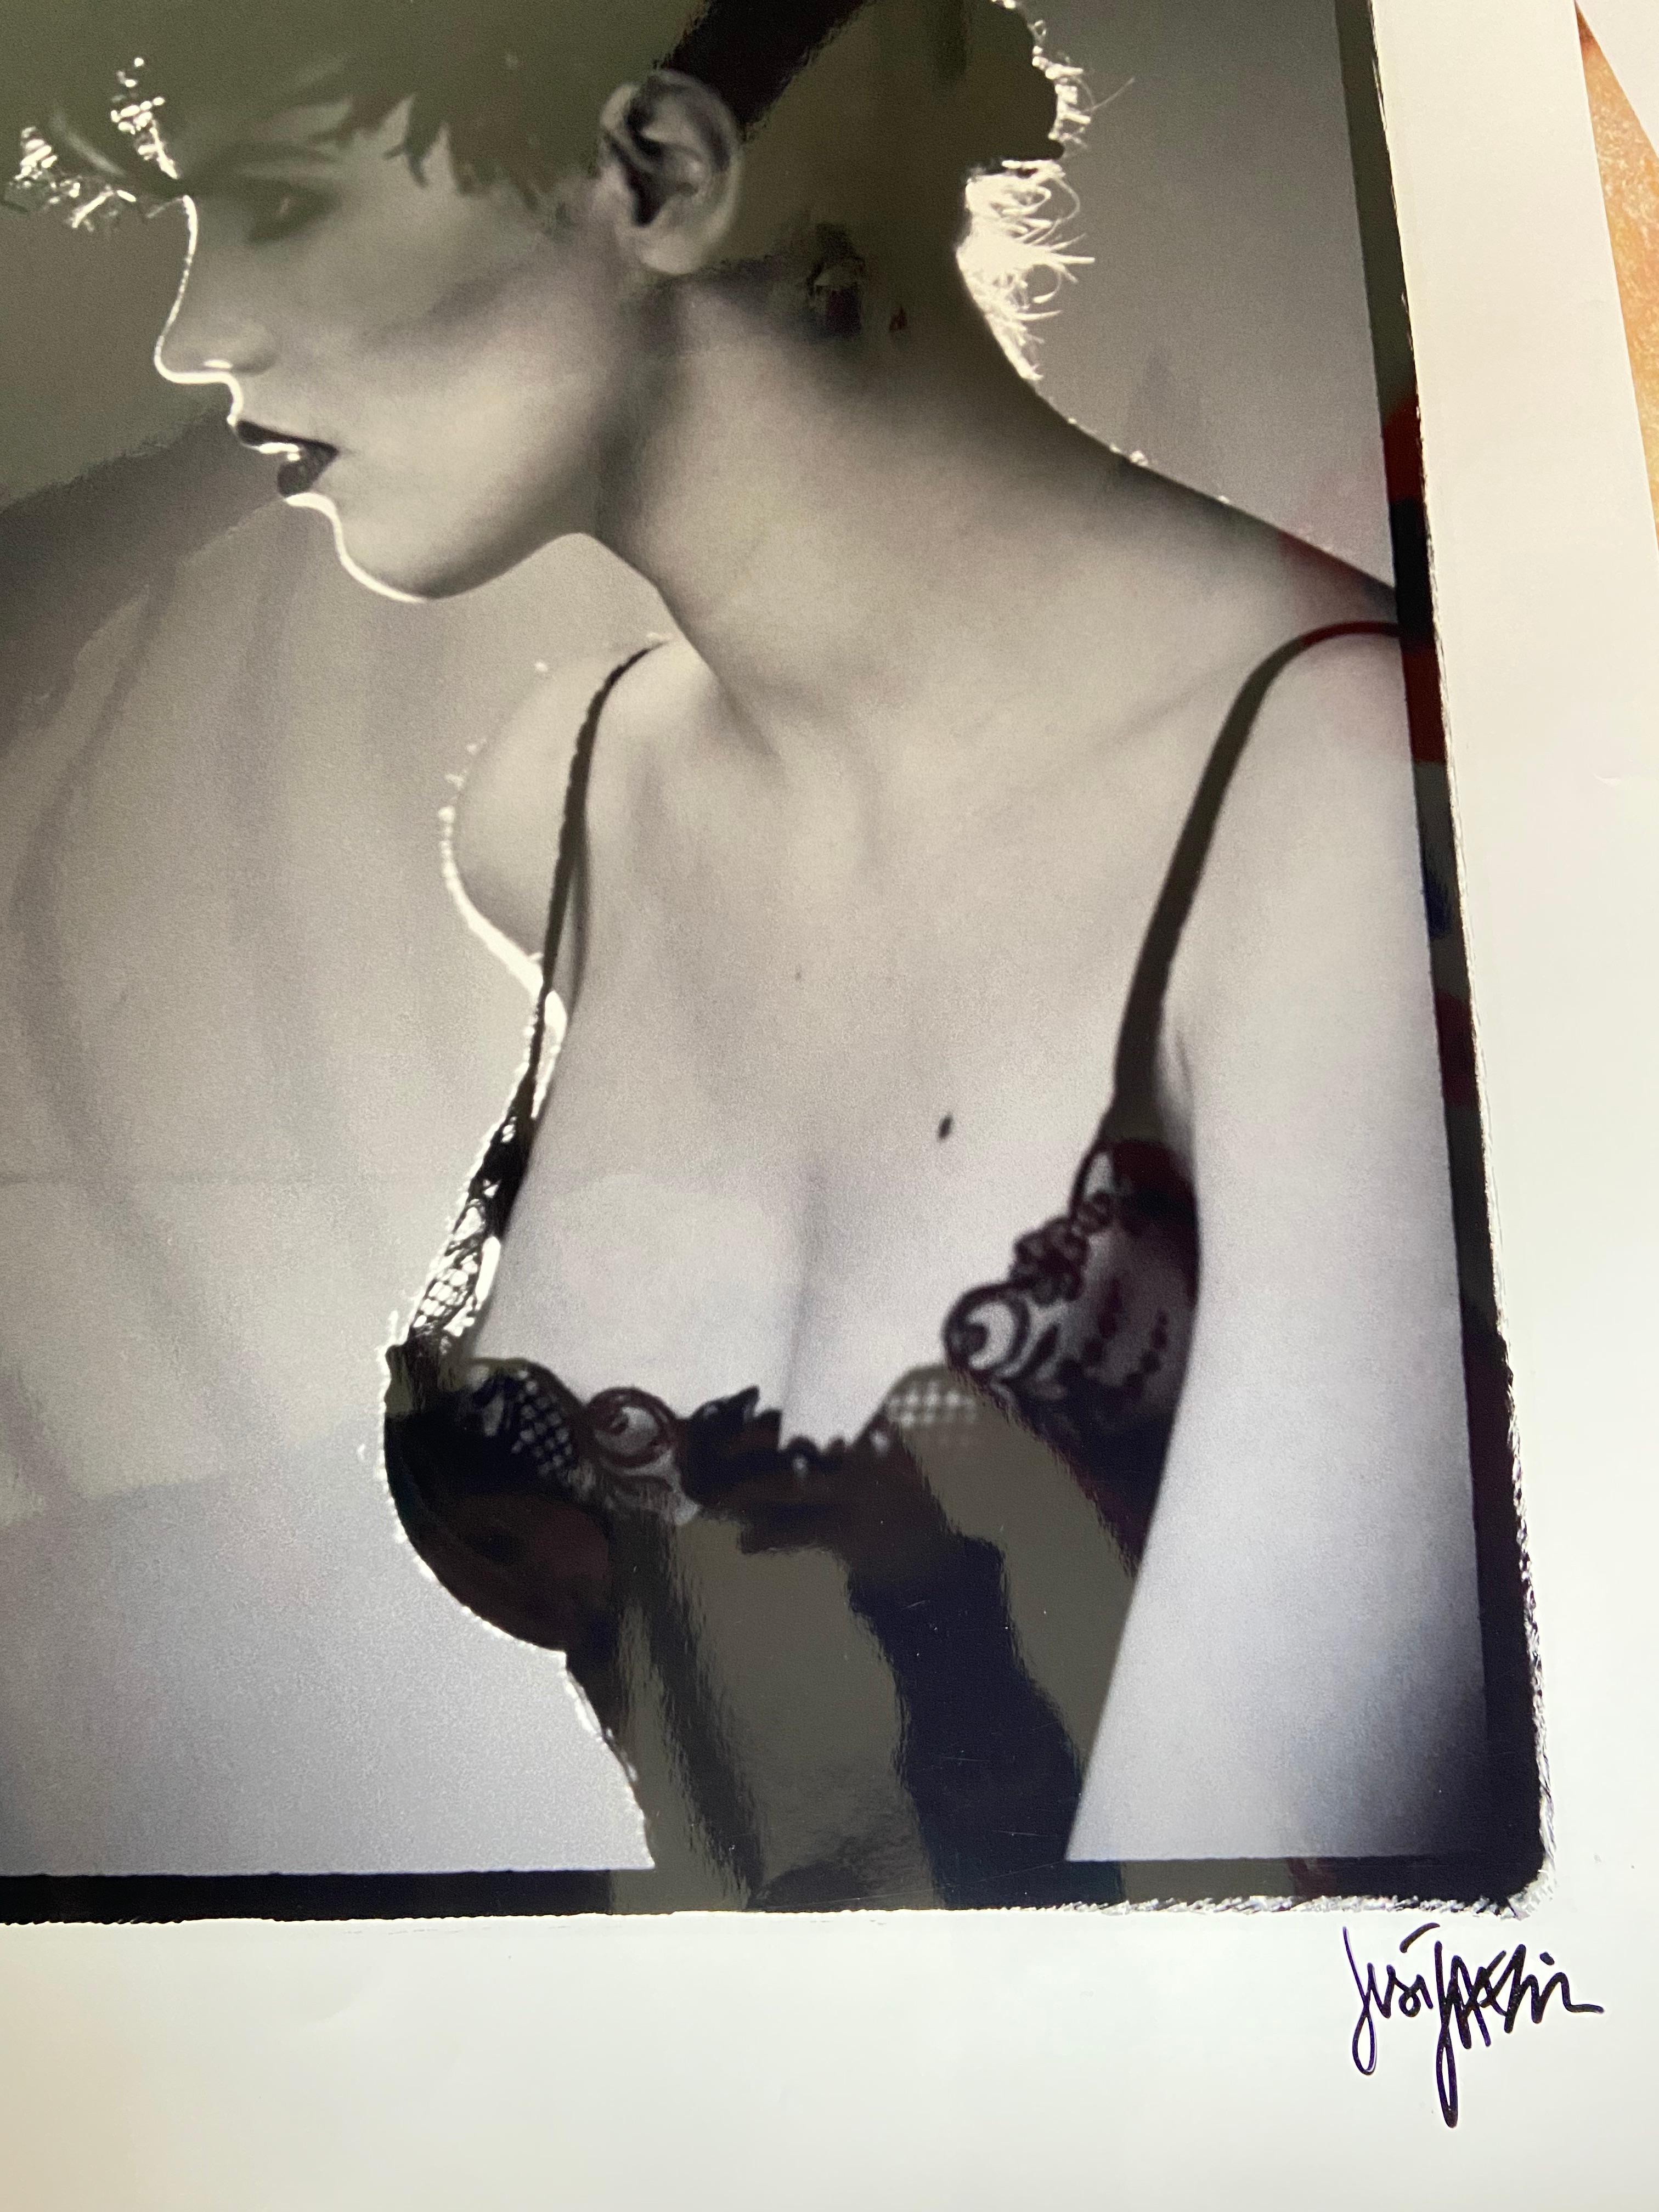 Just Jaeckin - Foto Isabelle Adjani - 2009
80 x 60 cm
Silberdruckfotografie
Unterzeichnet
In perfektem Zustand